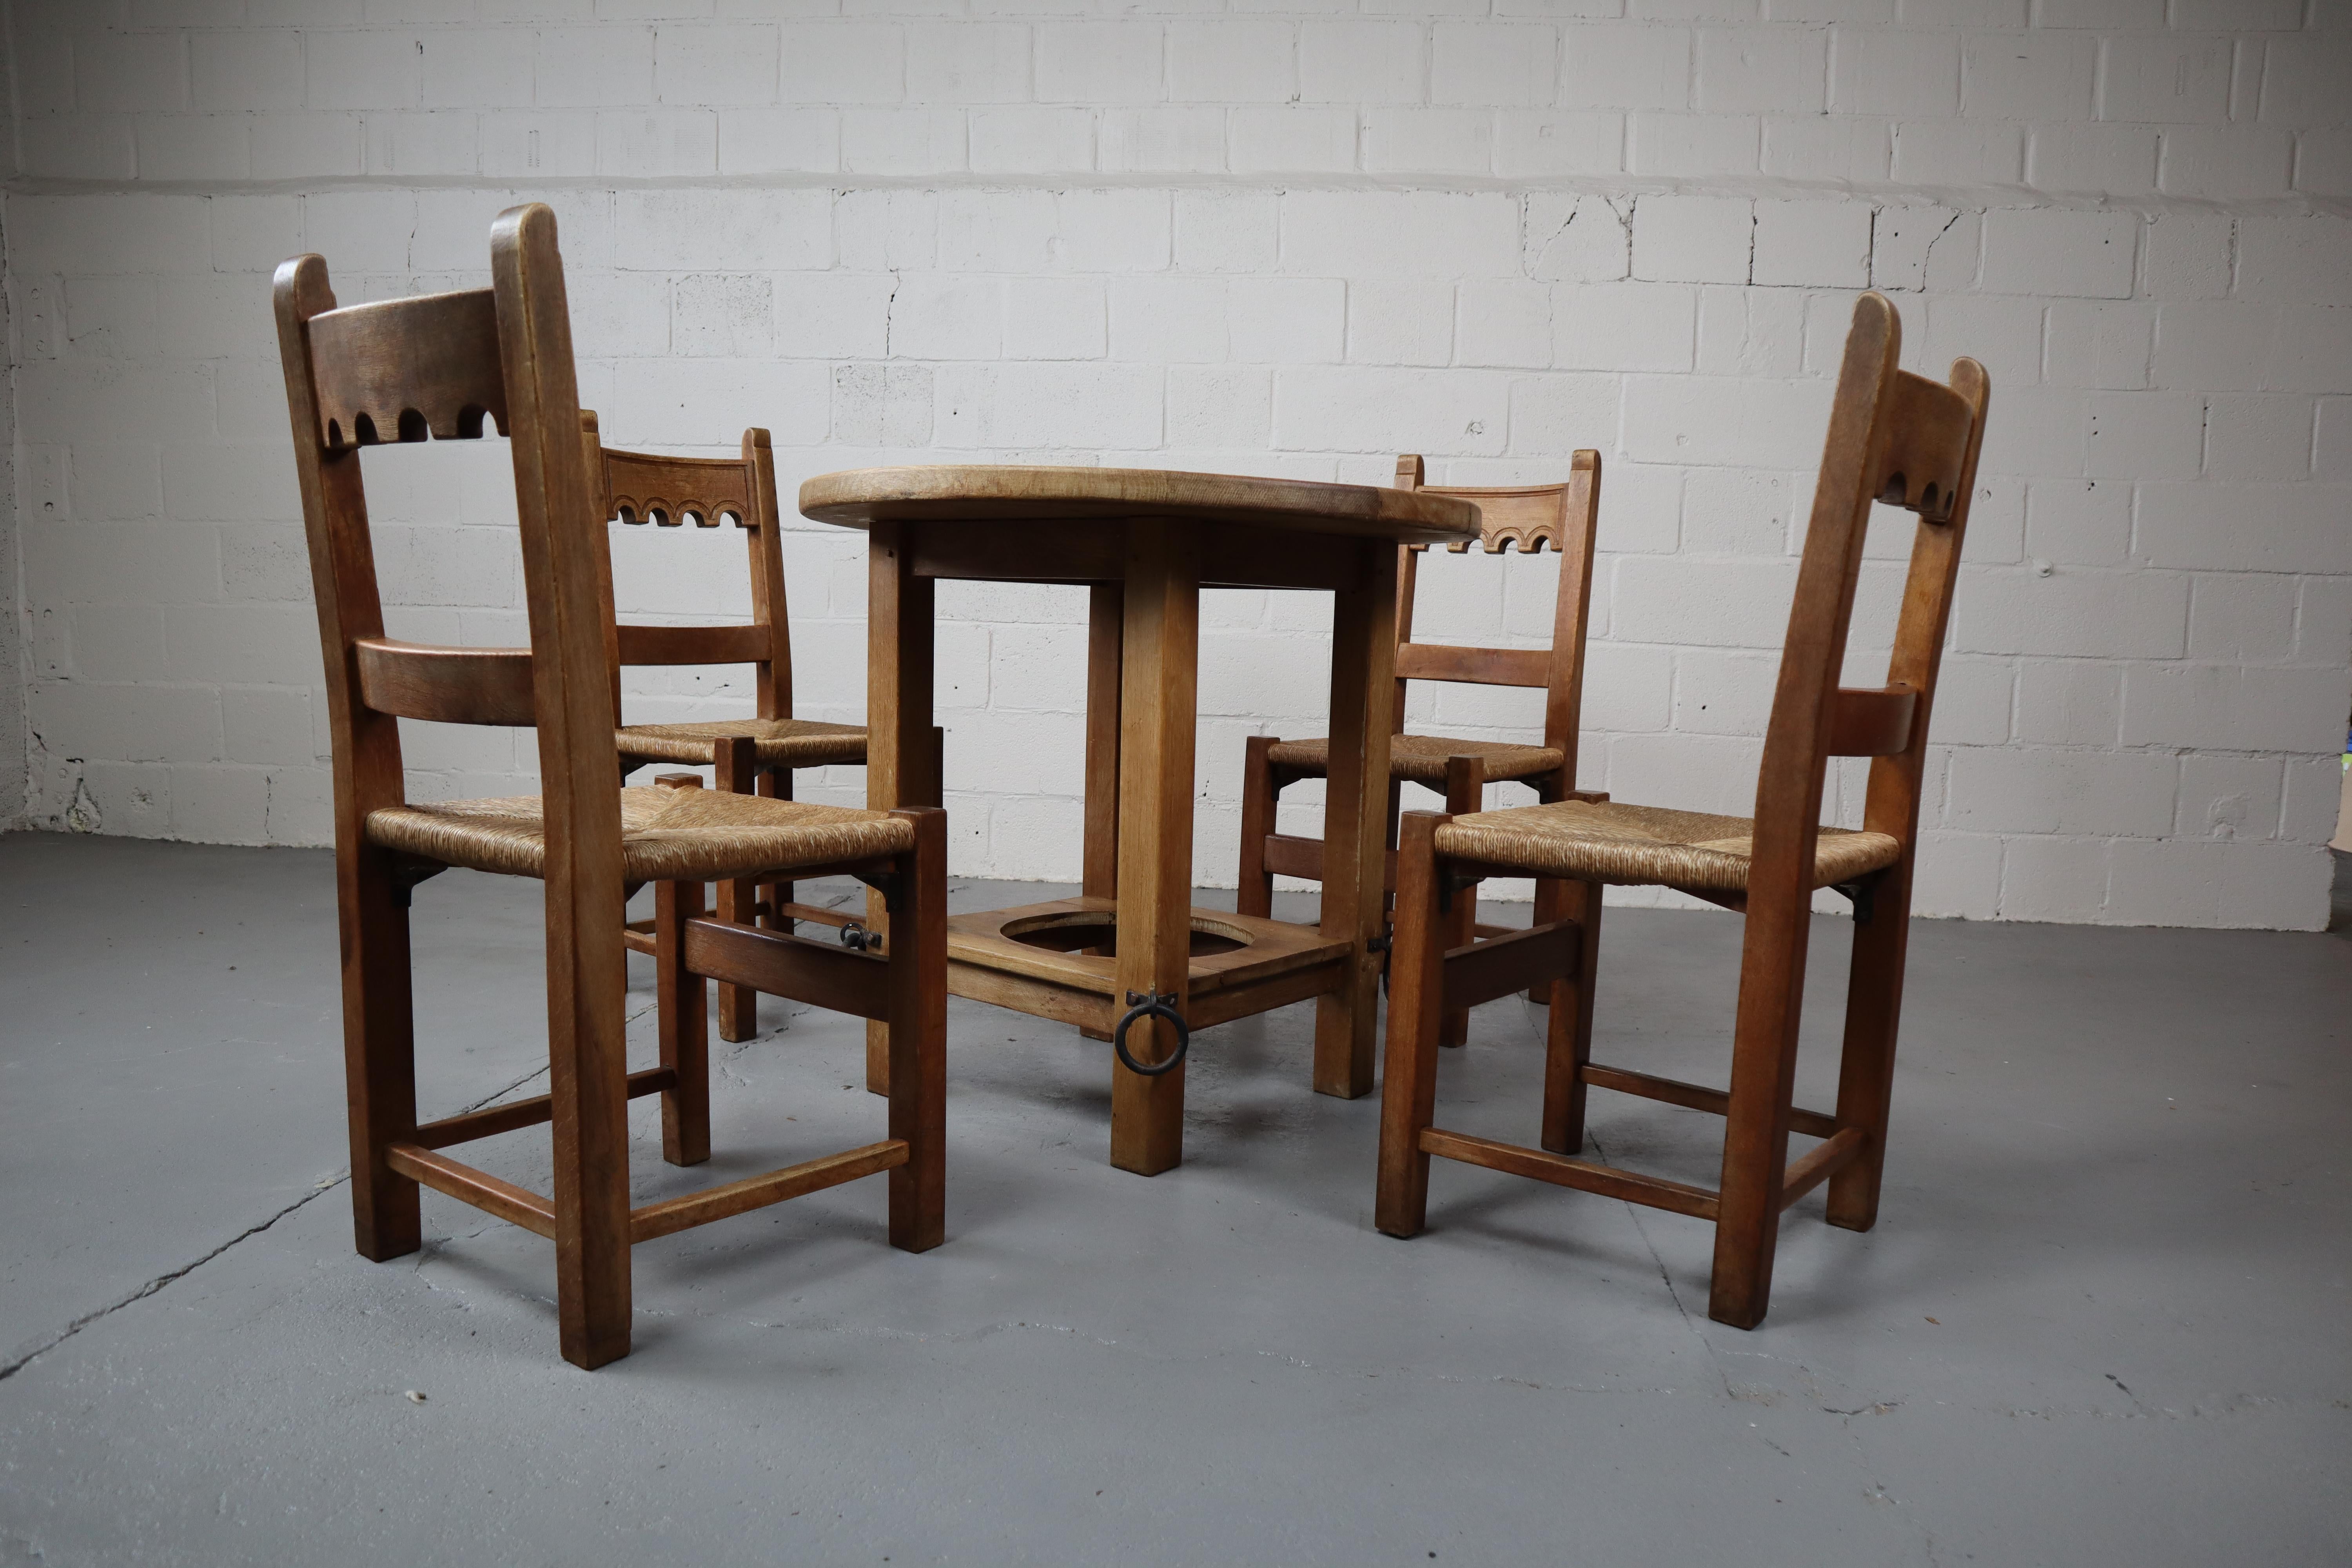 Stabiles und schweres Esszimmer-Set aus brutalistischer Eiche, bestehend aus einem runden Tisch mit vier Stühlen.

Stuhl: 48x90x42 cm Sitzhöhe 45 cm
Tisch: Ø 90cm  Höhe 81 cm